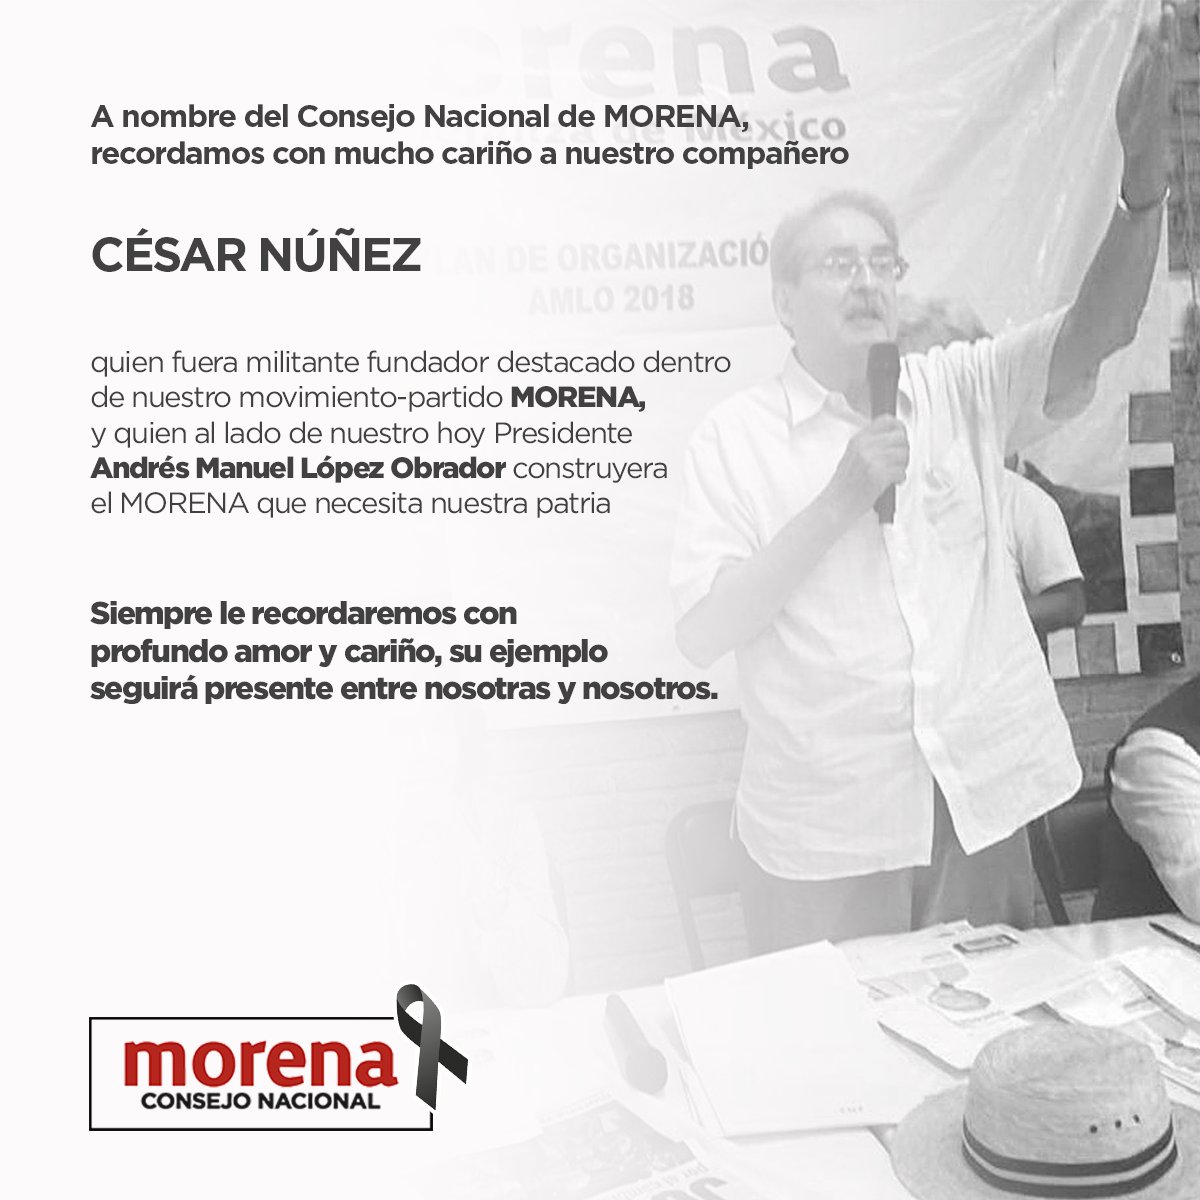 A nombre del @ConsejoMorenaMX la C.P. @BerthaLujanMx envía un saludo a compañeros y compañeras, familiares y seres queridos de nuestro destacado militante fundador de #MORENA, César Núñez por su sensible fallecimiento. Su ejemplo siempre estará presente entre nosotras.